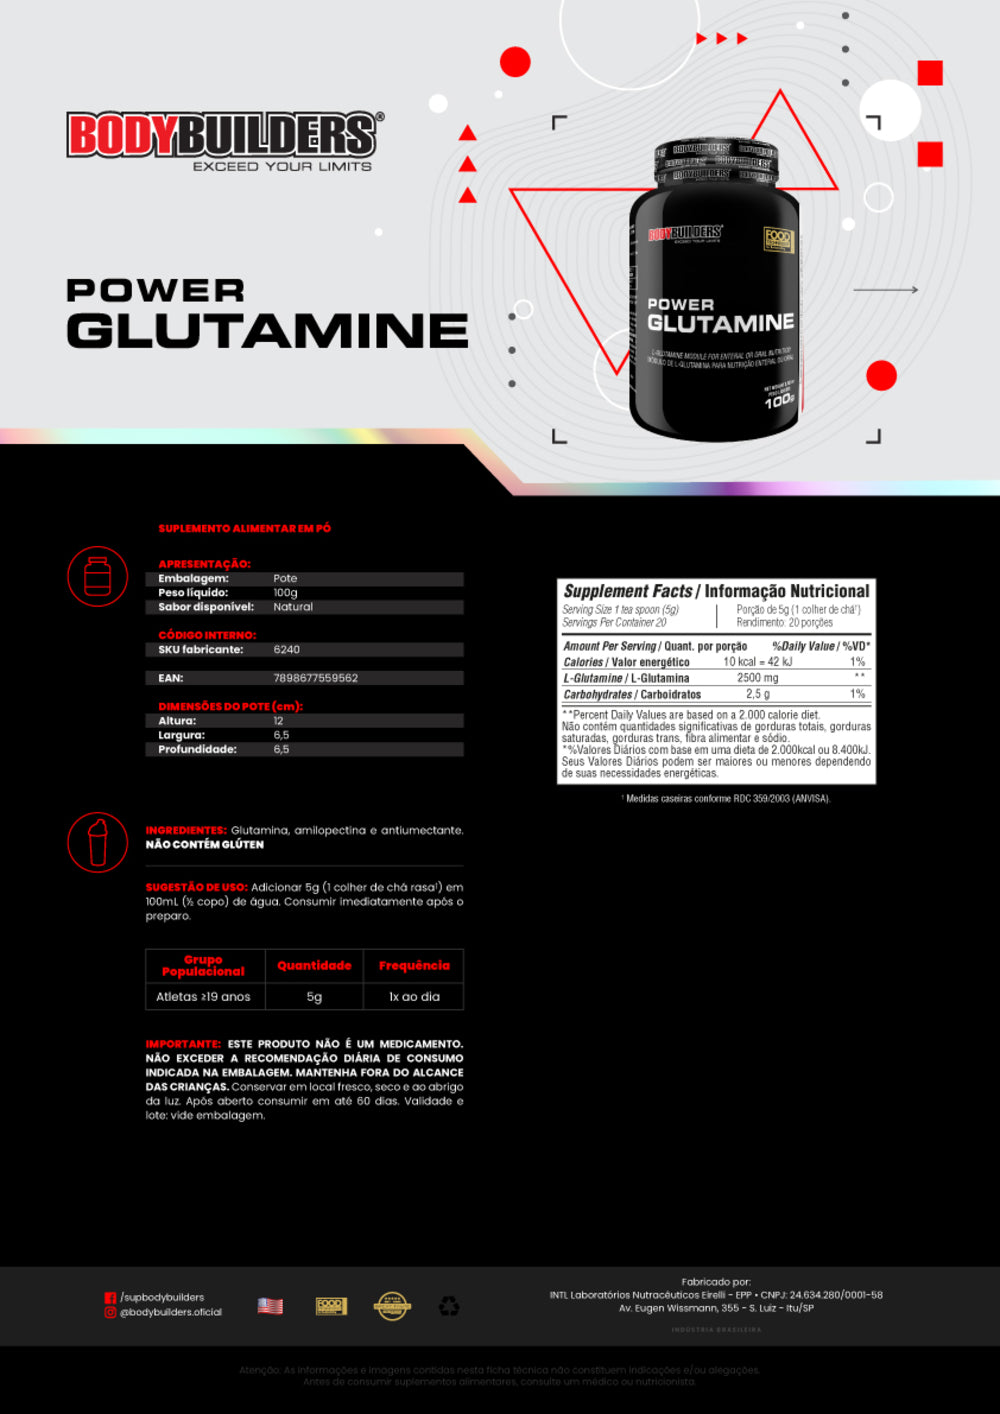 KIT Power Glutamine 100g + Power Creatine 100g - BodyBuilders